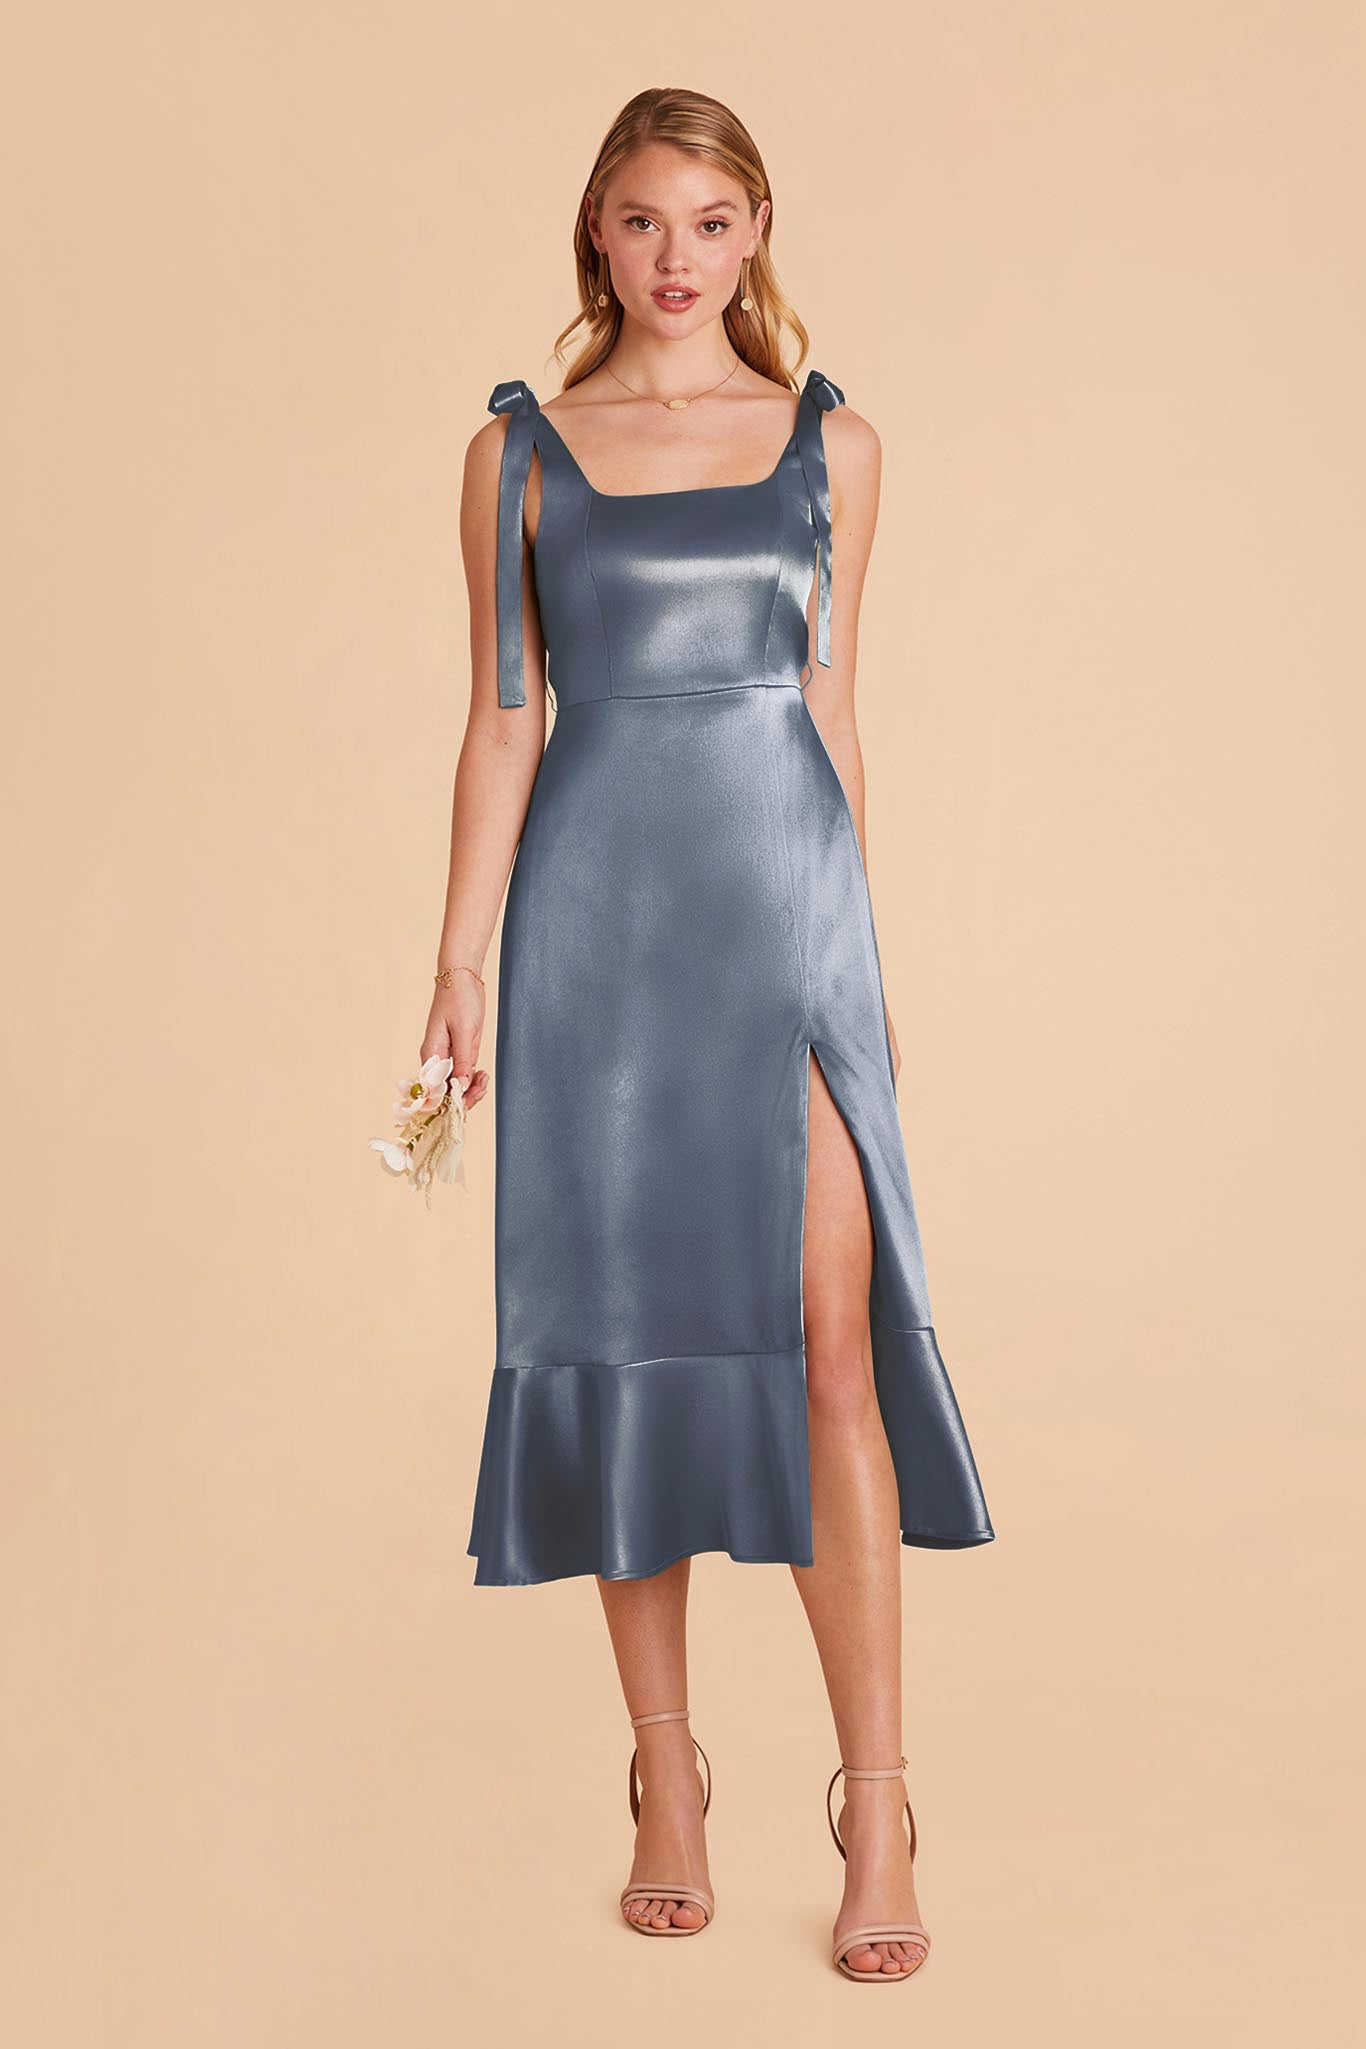 French Blue Eugenia Satin Midi Dress by Birdy Grey